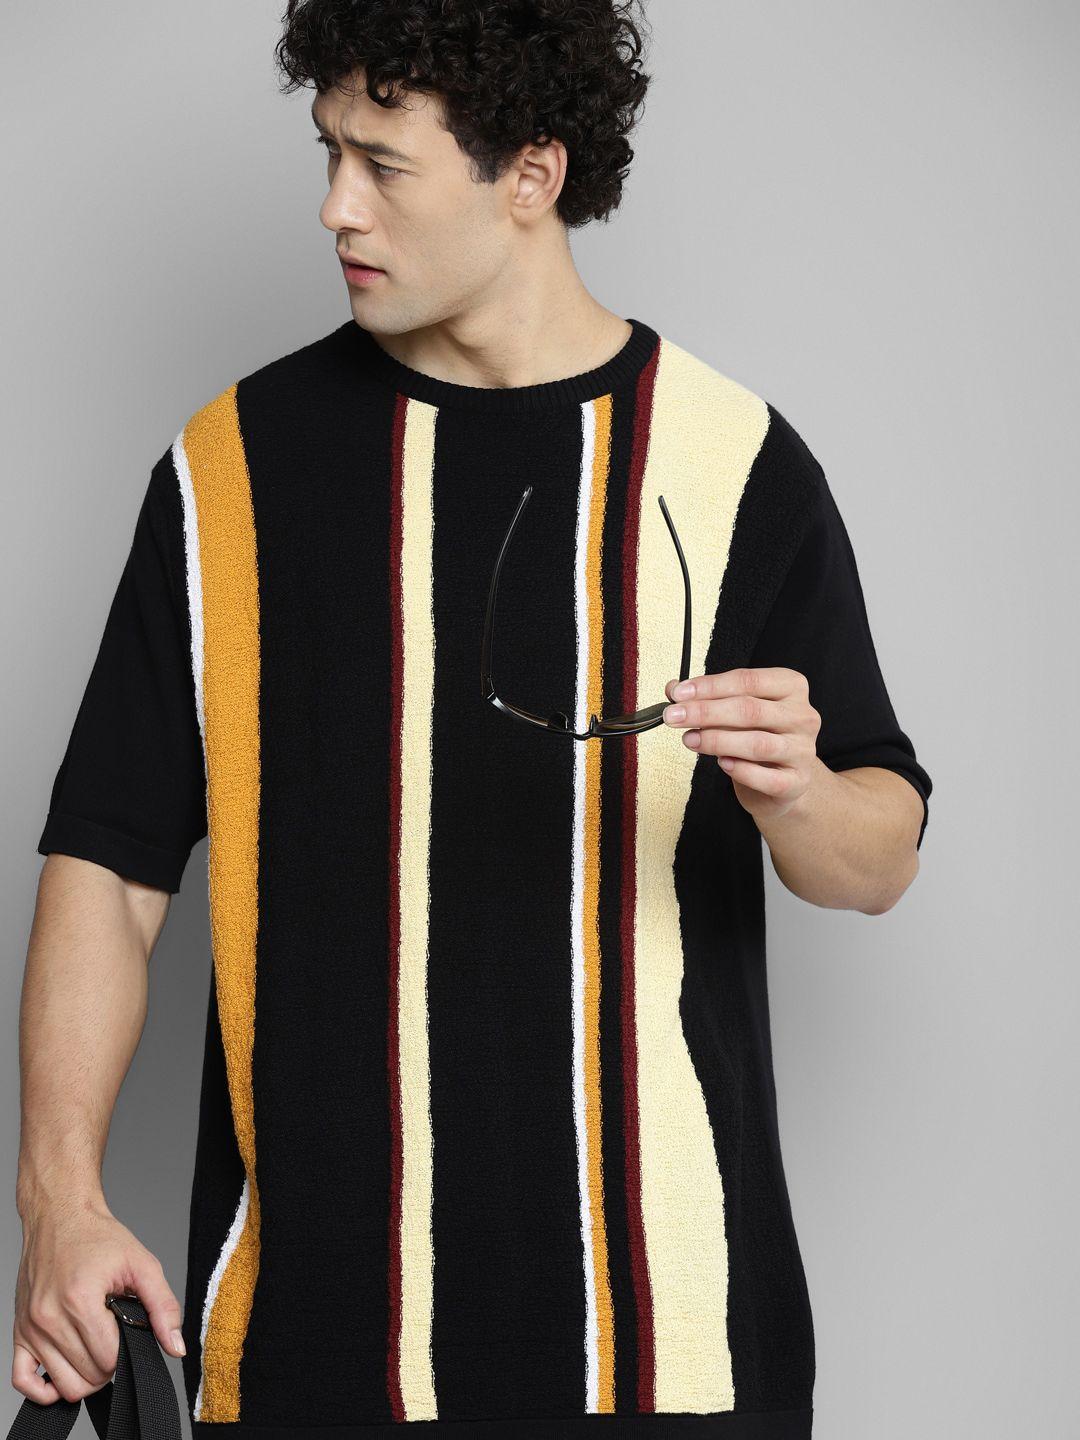 kook n keech men multicoloured striped pockets t-shirt